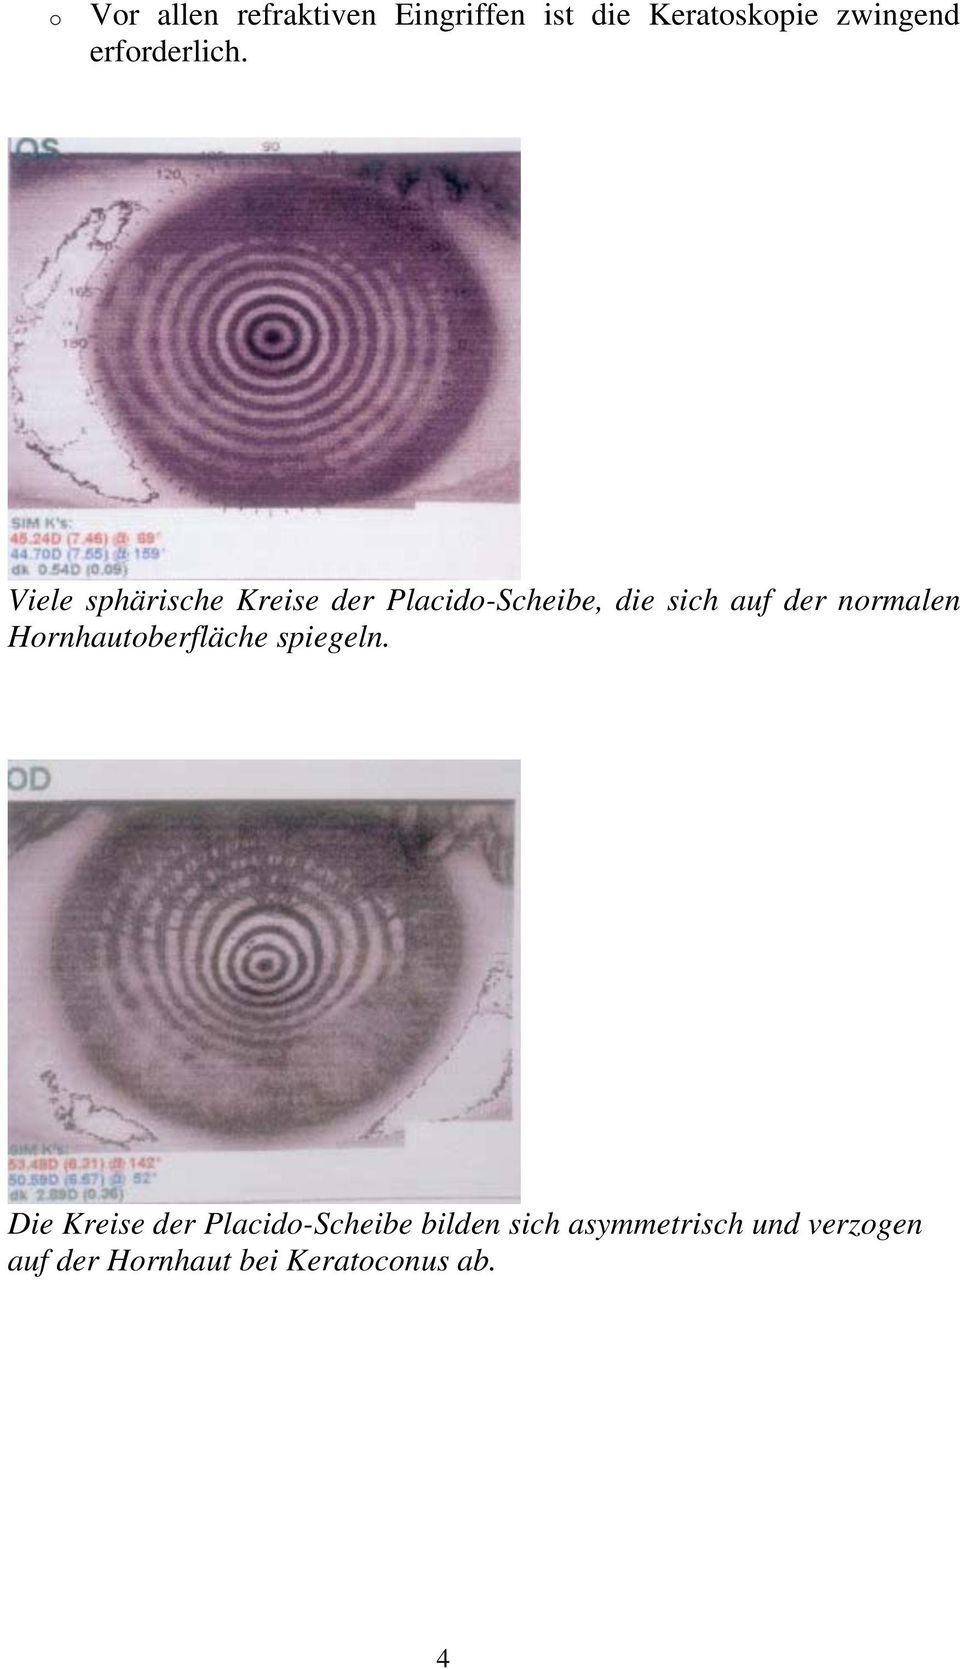 Viele sphärische Kreise der Placido-Scheibe, die sich auf der normalen